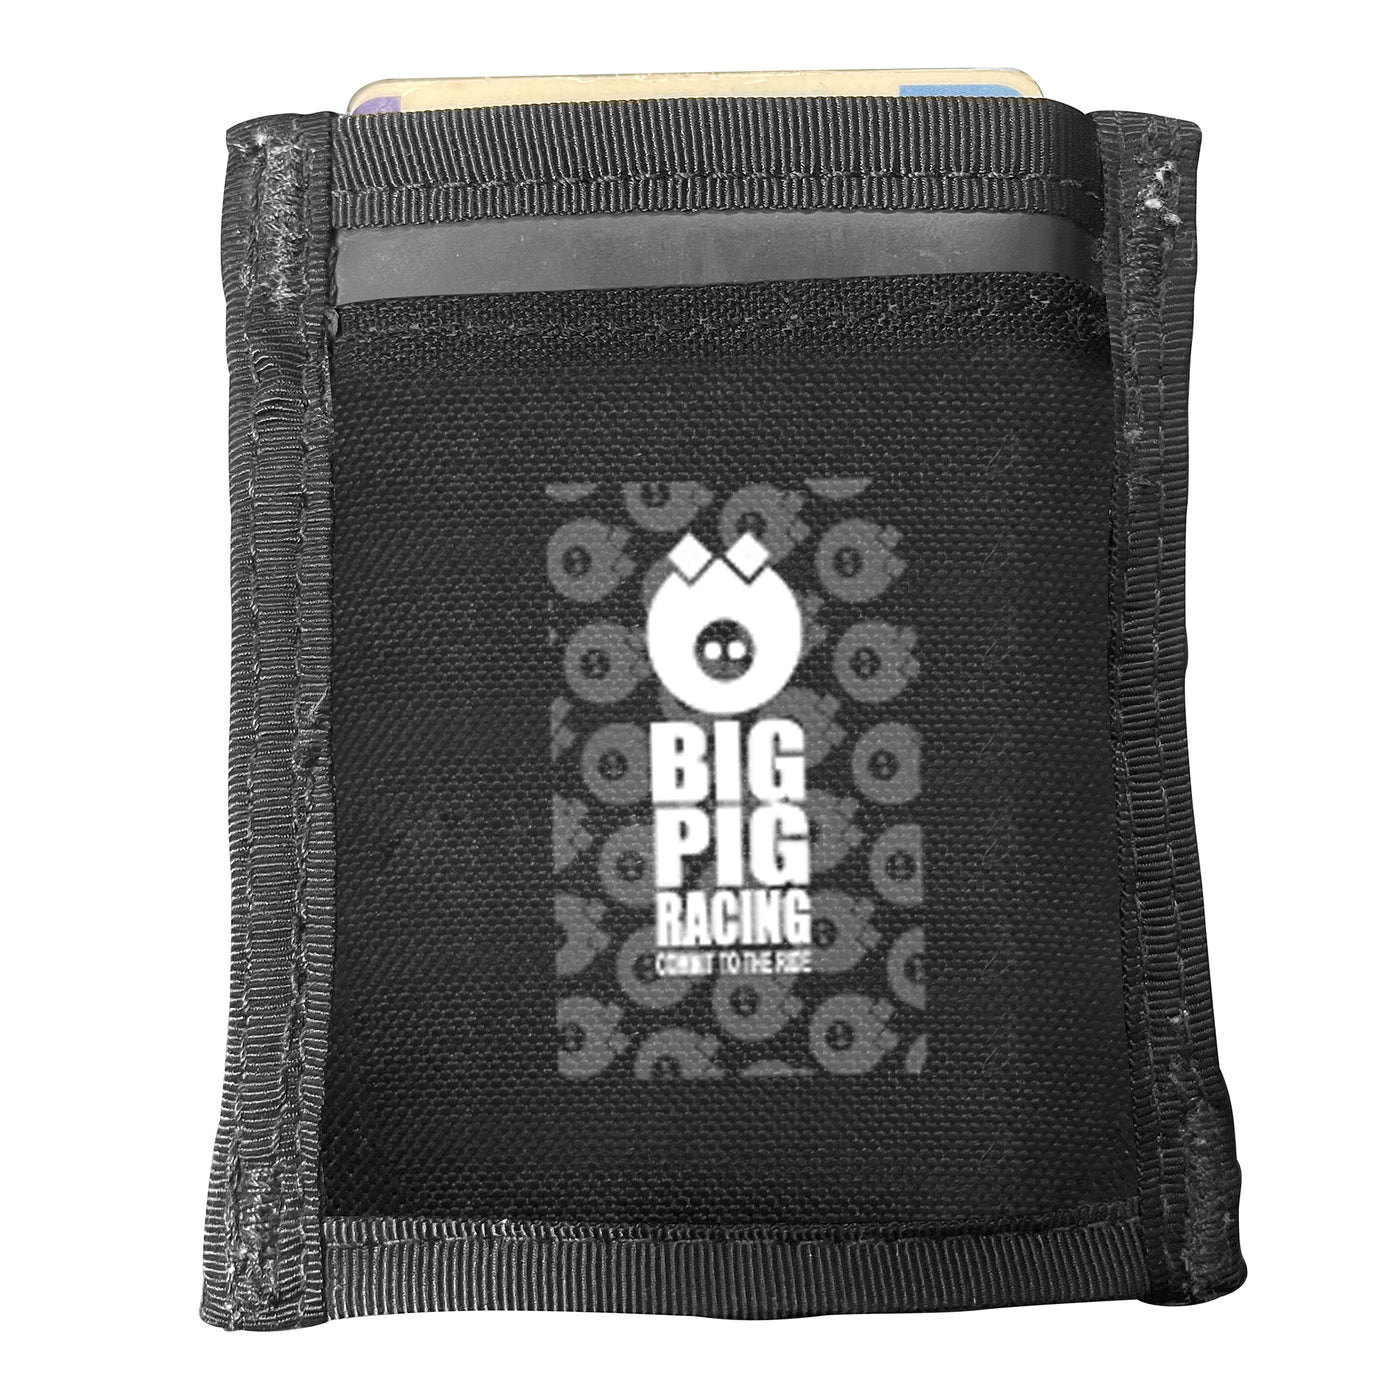 Big Pig RaceDay Wallet